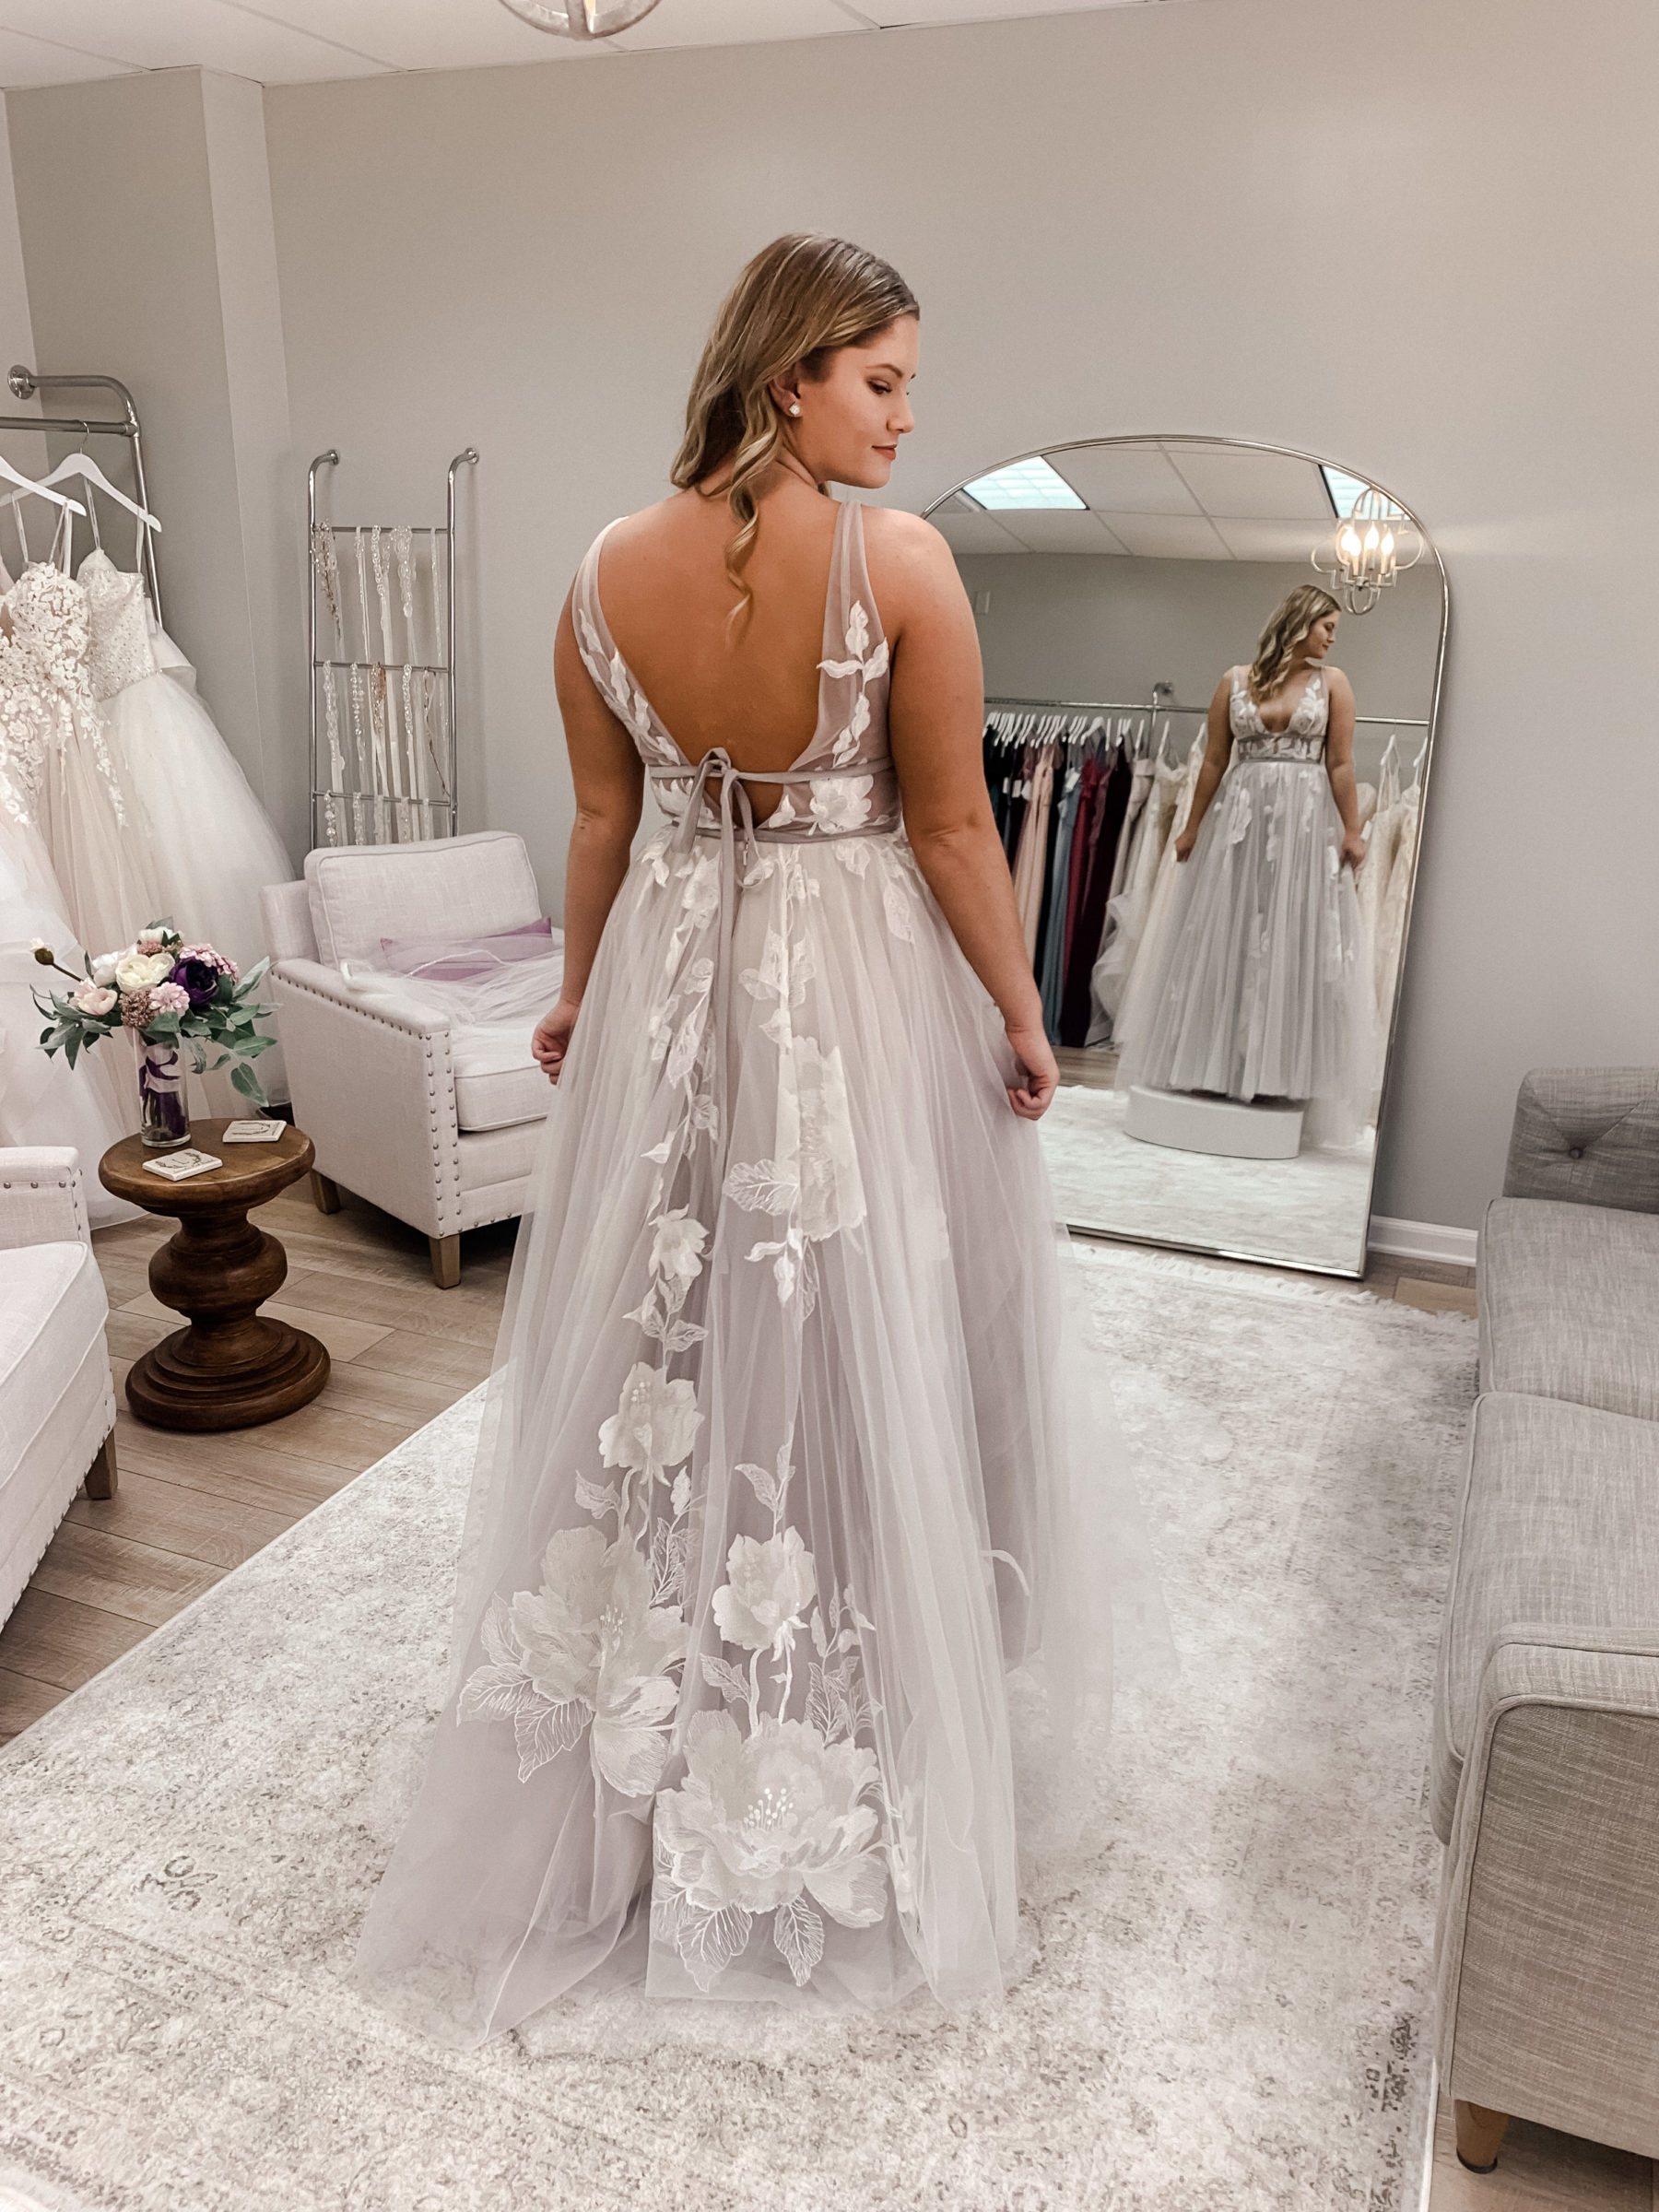 Meet Lavender Park Bridal on Nashville Bride Guide